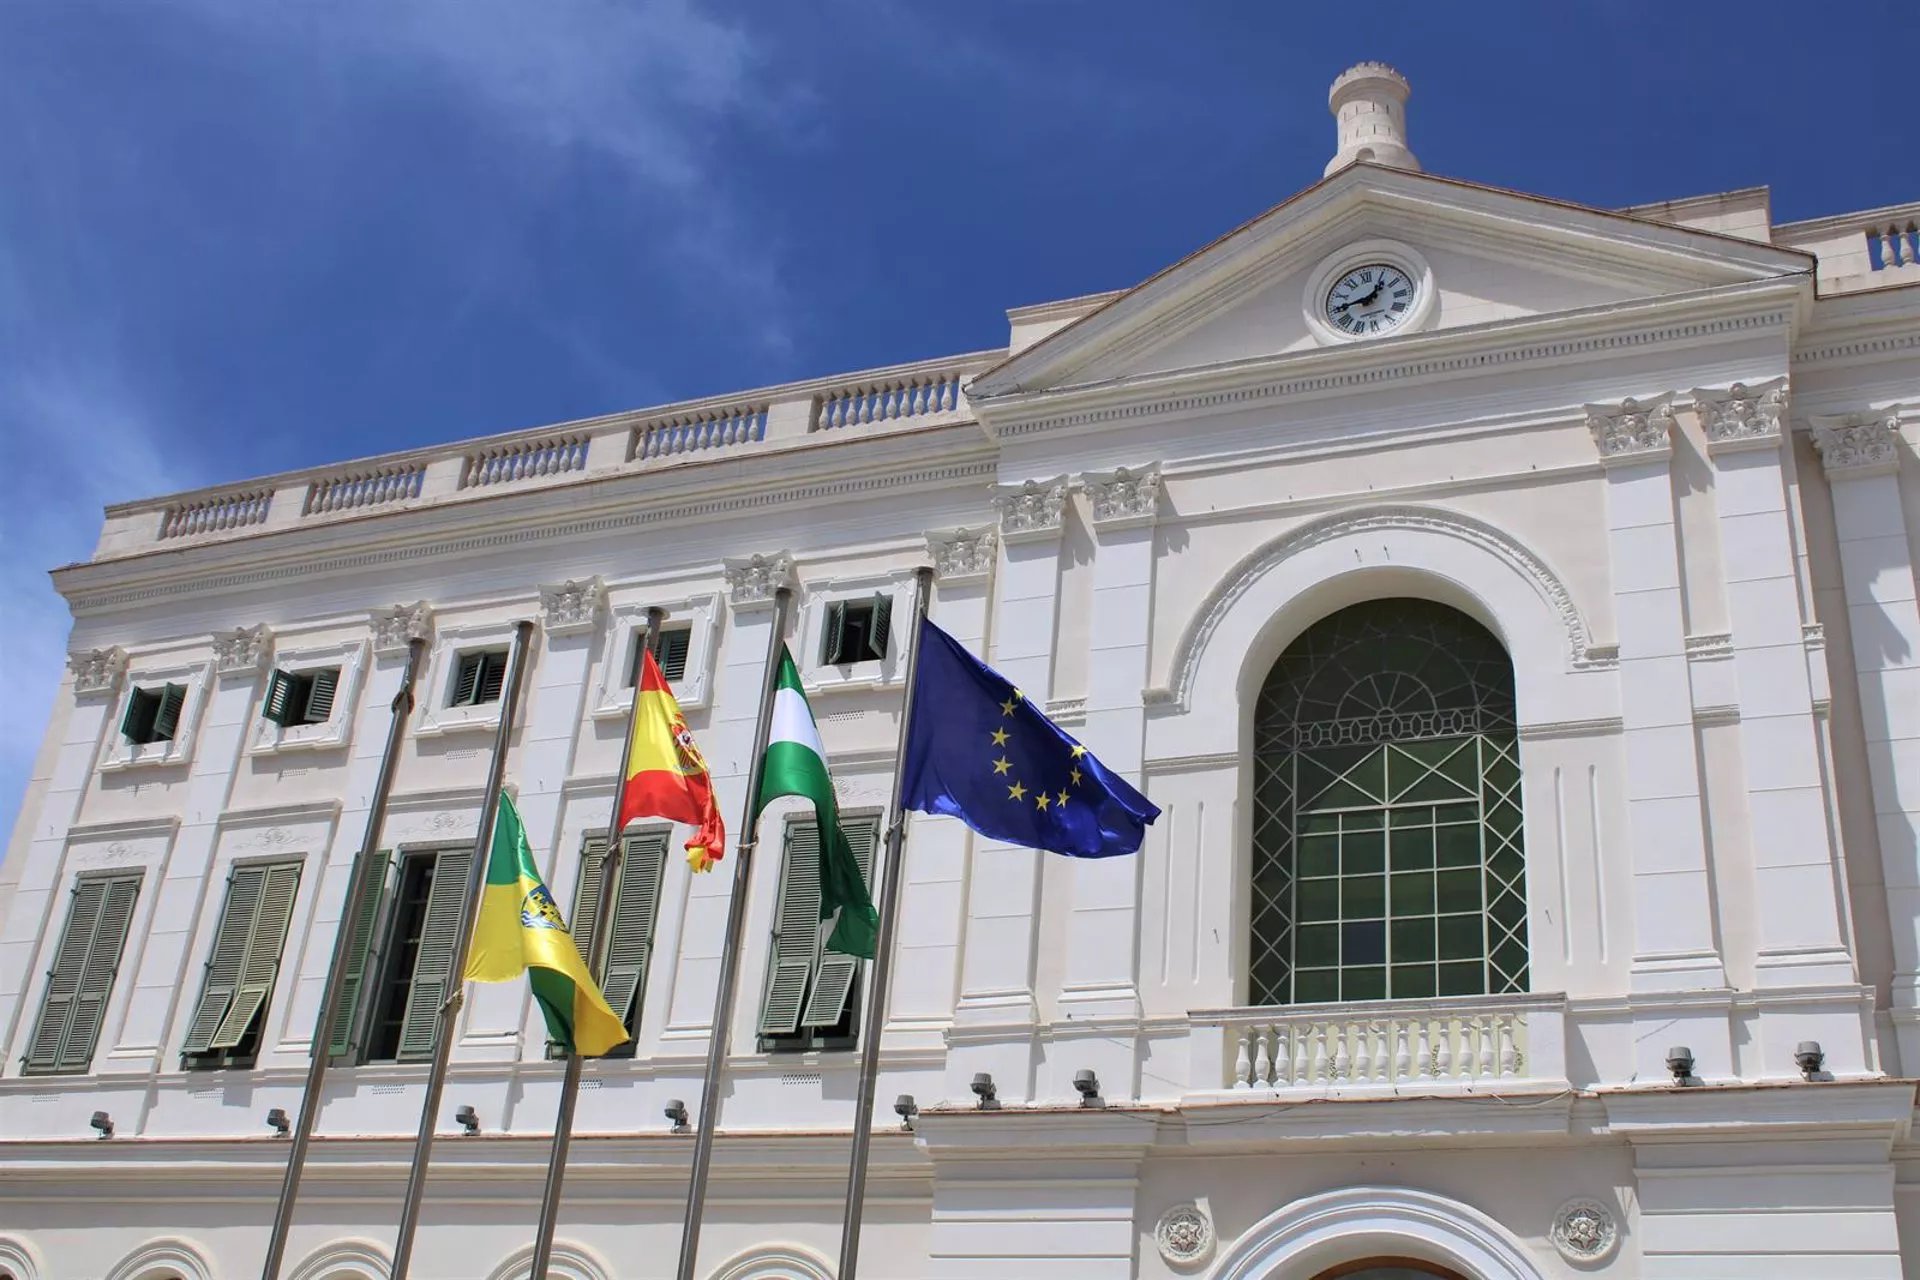 La bandera de El Puerto a media asta por luto oficial frente a la fachada del Ayuntamiento - AYUNTAMIENTO DE EL PUERTO